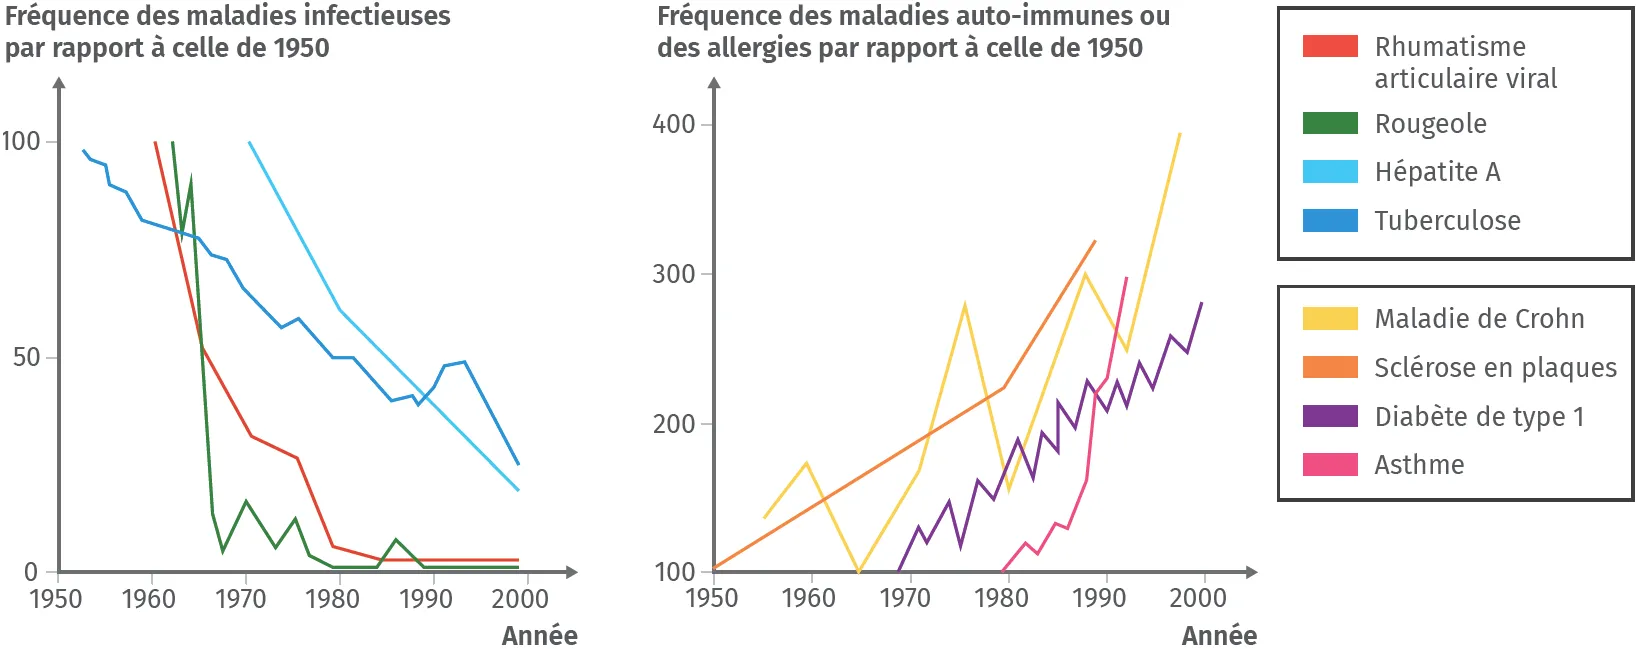 Fréquence des maladies infectieuses et auto-immunes ou des allergies entre 1950 et 2000